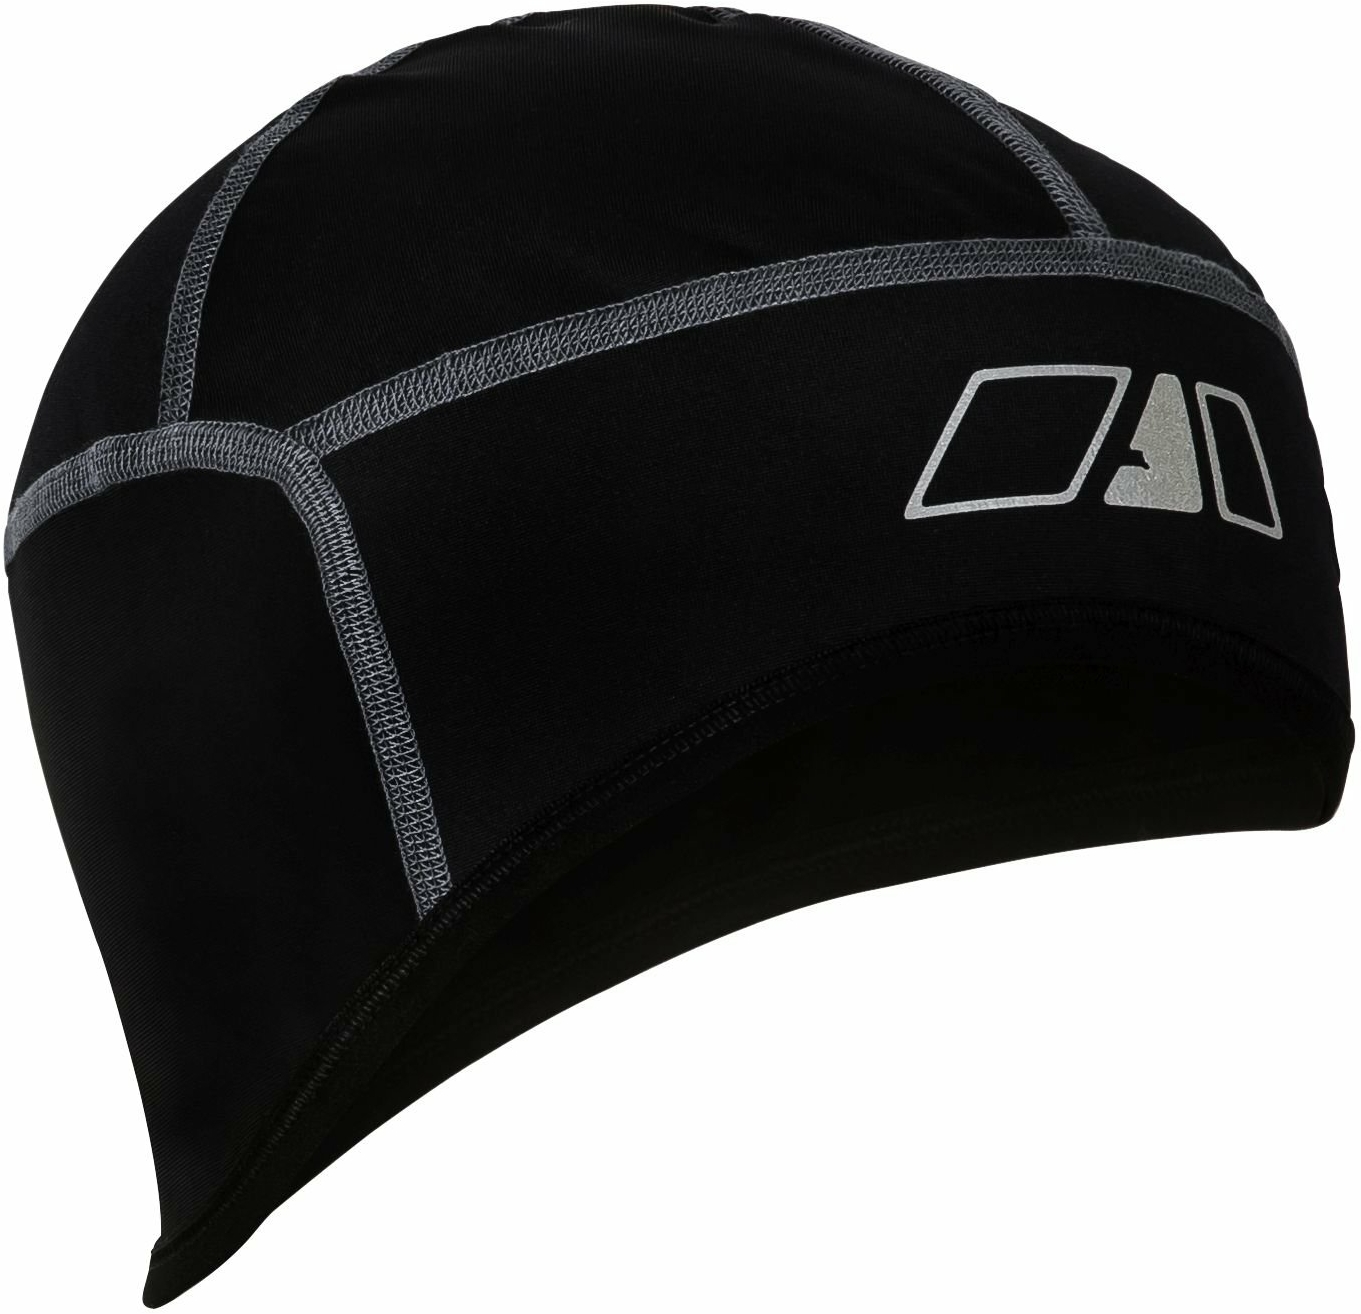 Apura Helmunterziehmütze Protect S/M schwarz/grau